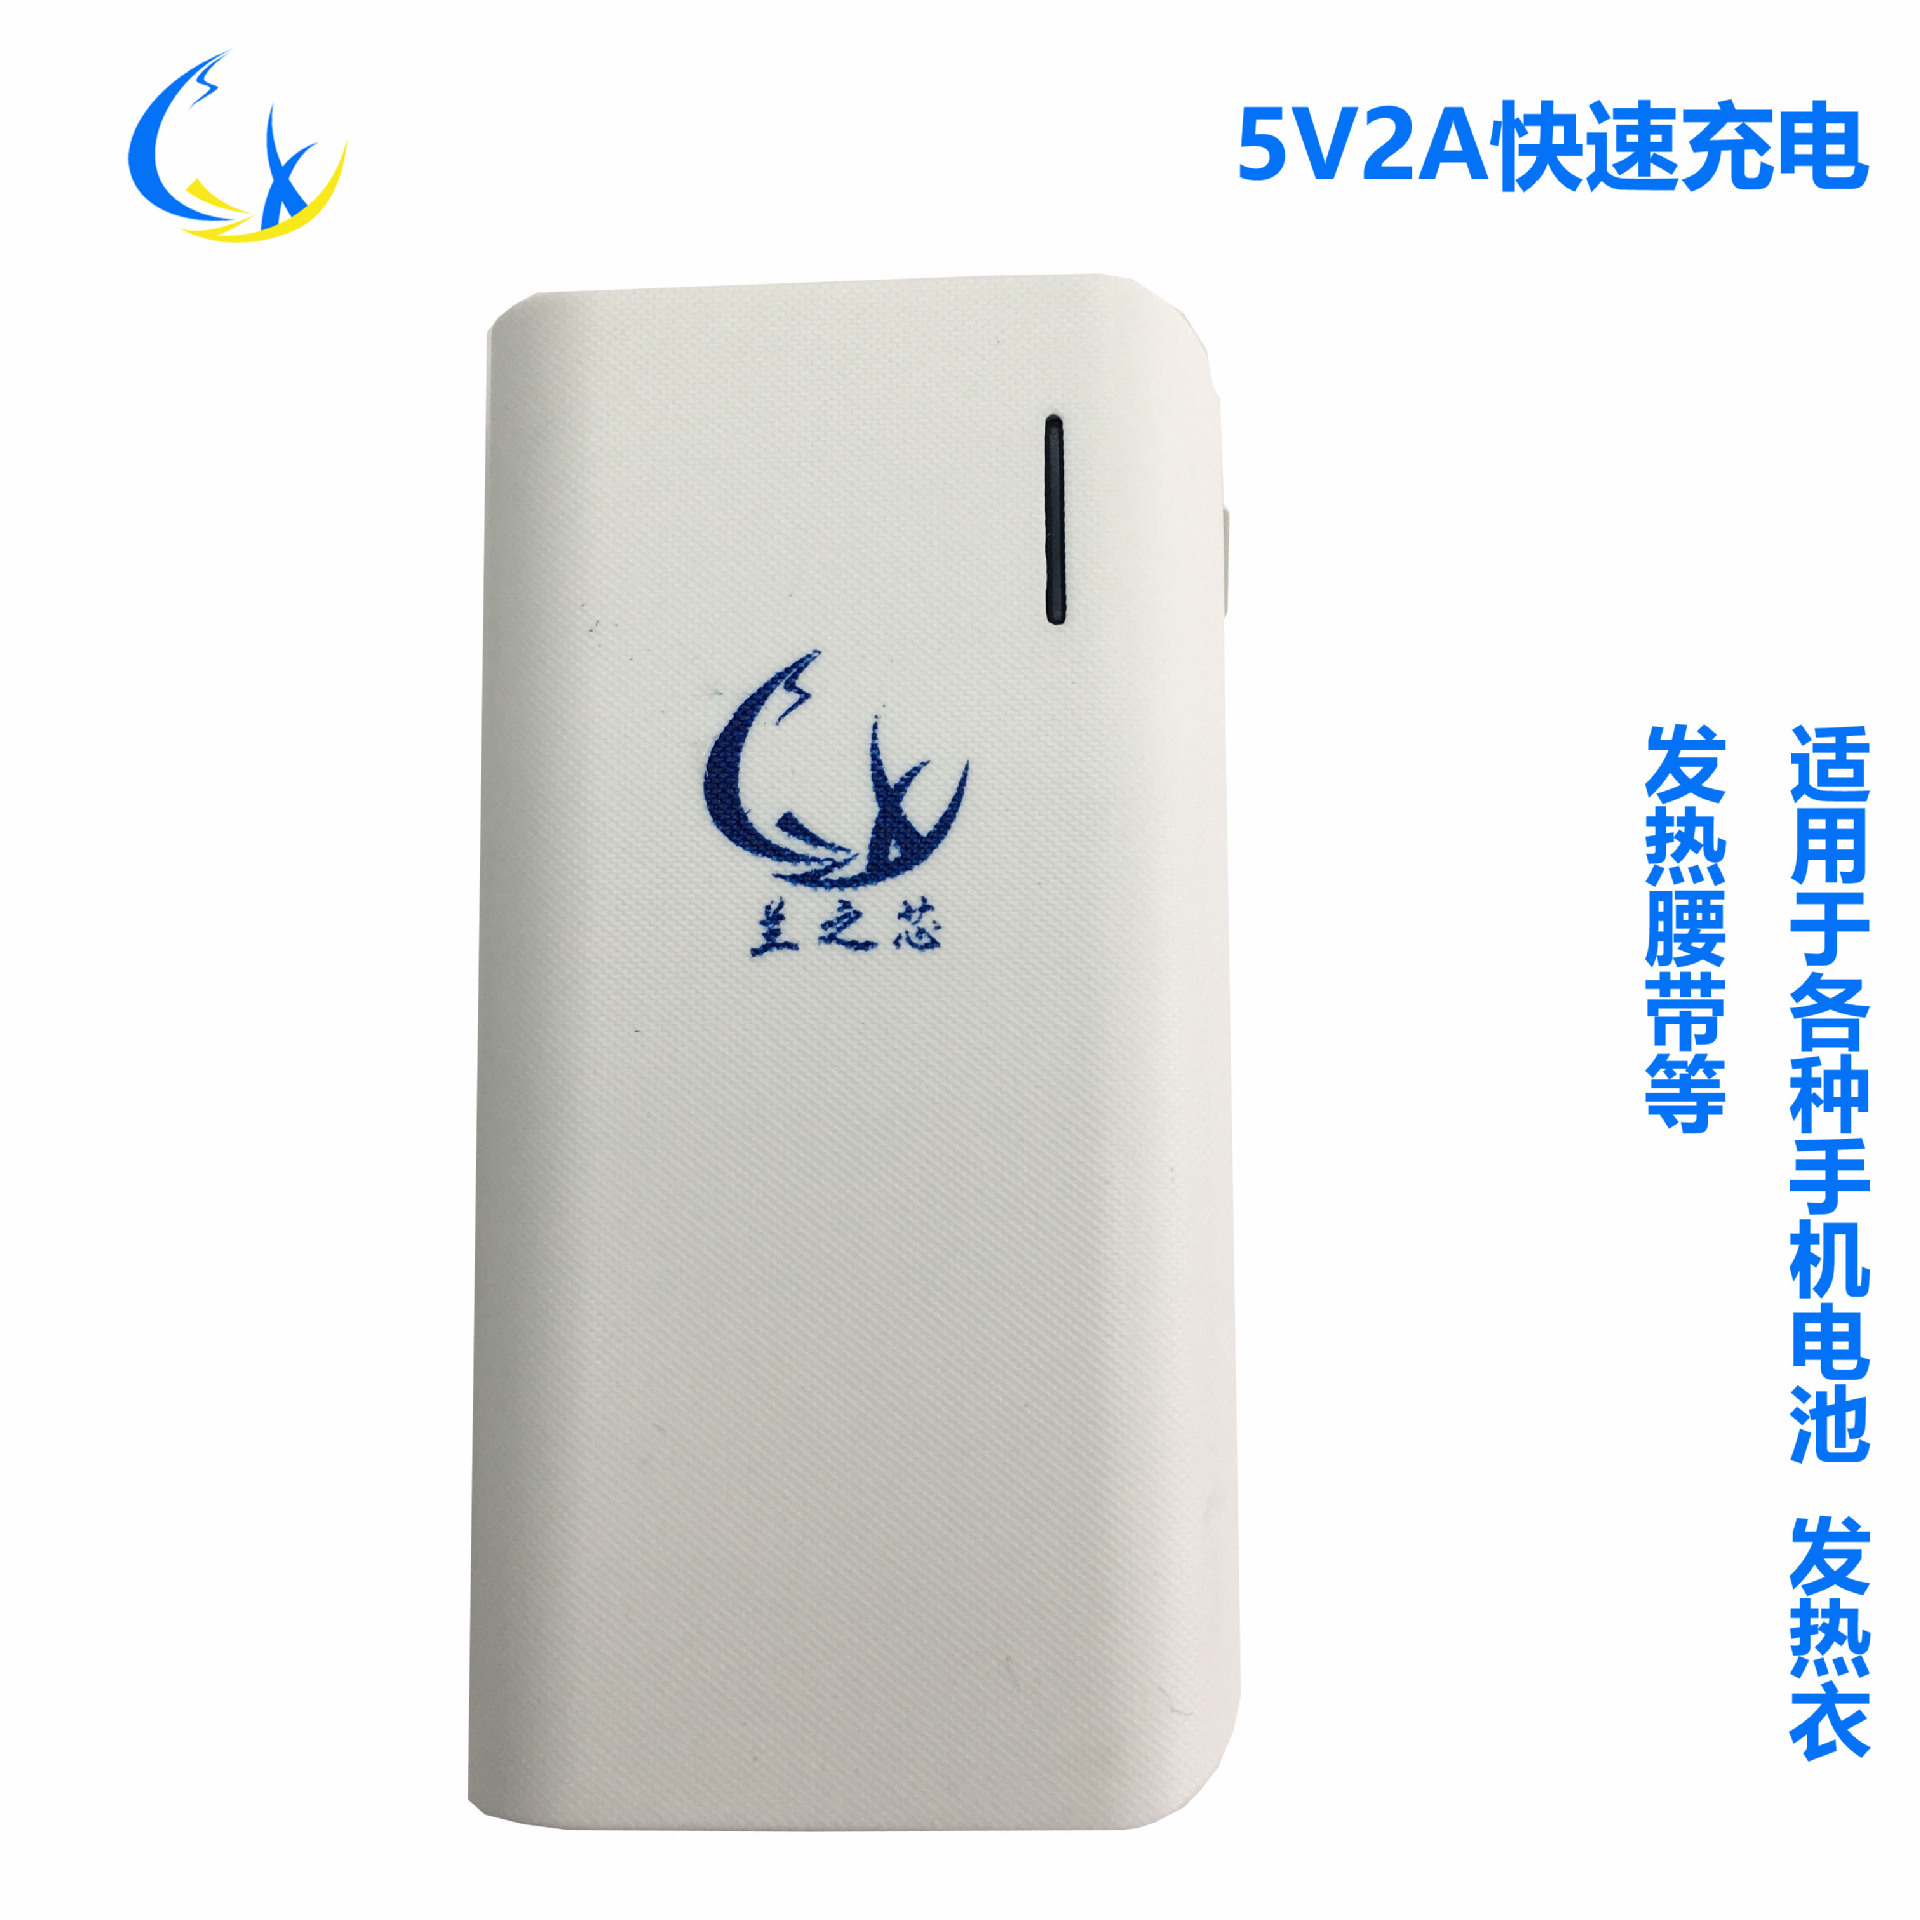 5V2A充电宝 保暖发热衣智能锂电池快充 5000毫安电热腰带移动电源